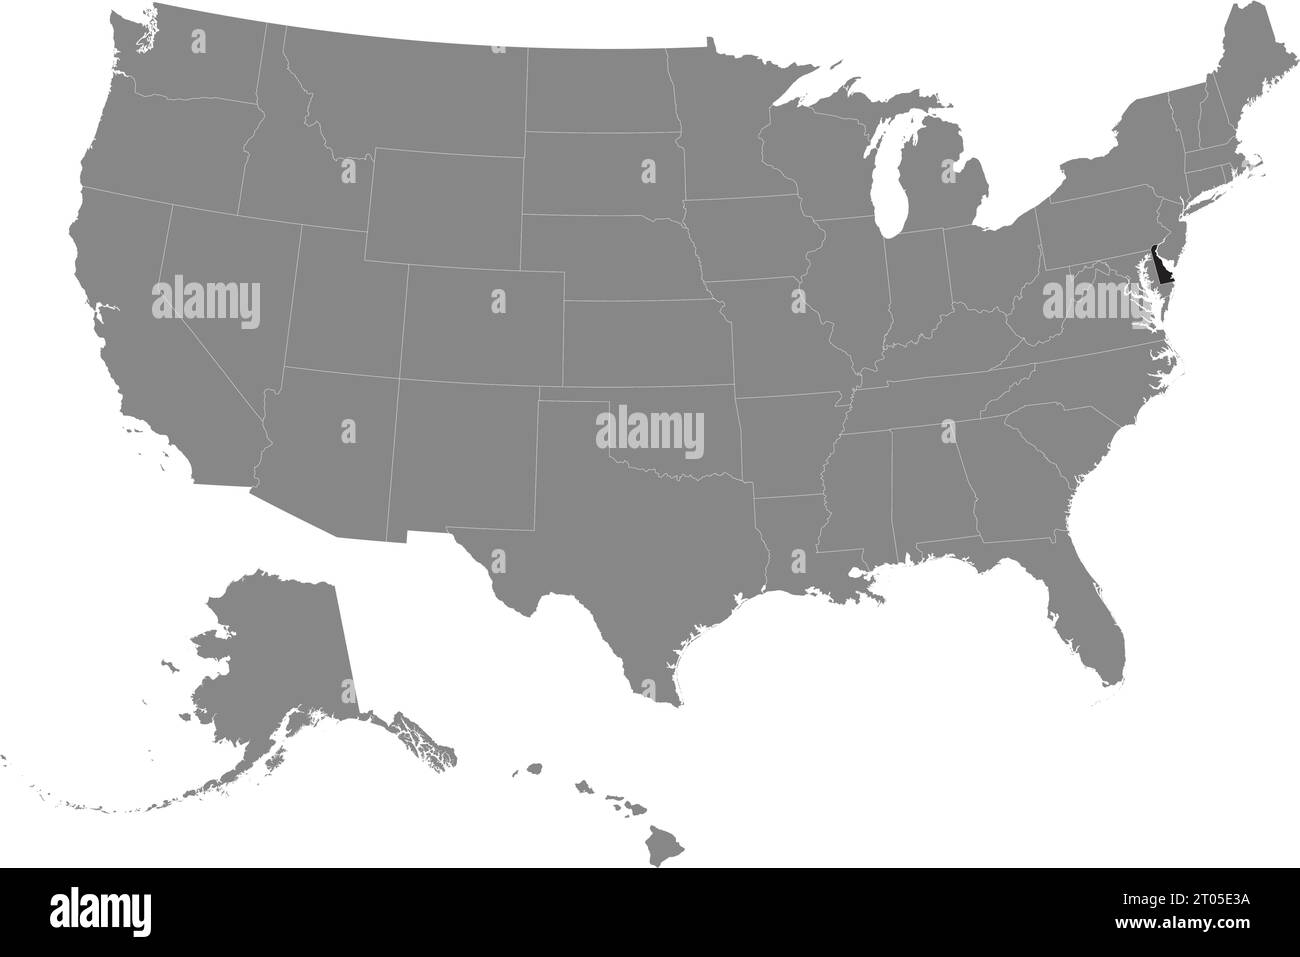 Schwarze CMYK-Bundeskarte von DELAWARE in detaillierter grauer, leerer politischer Karte der Vereinigten Staaten von Amerika auf transparentem Hintergrund Stock Vektor